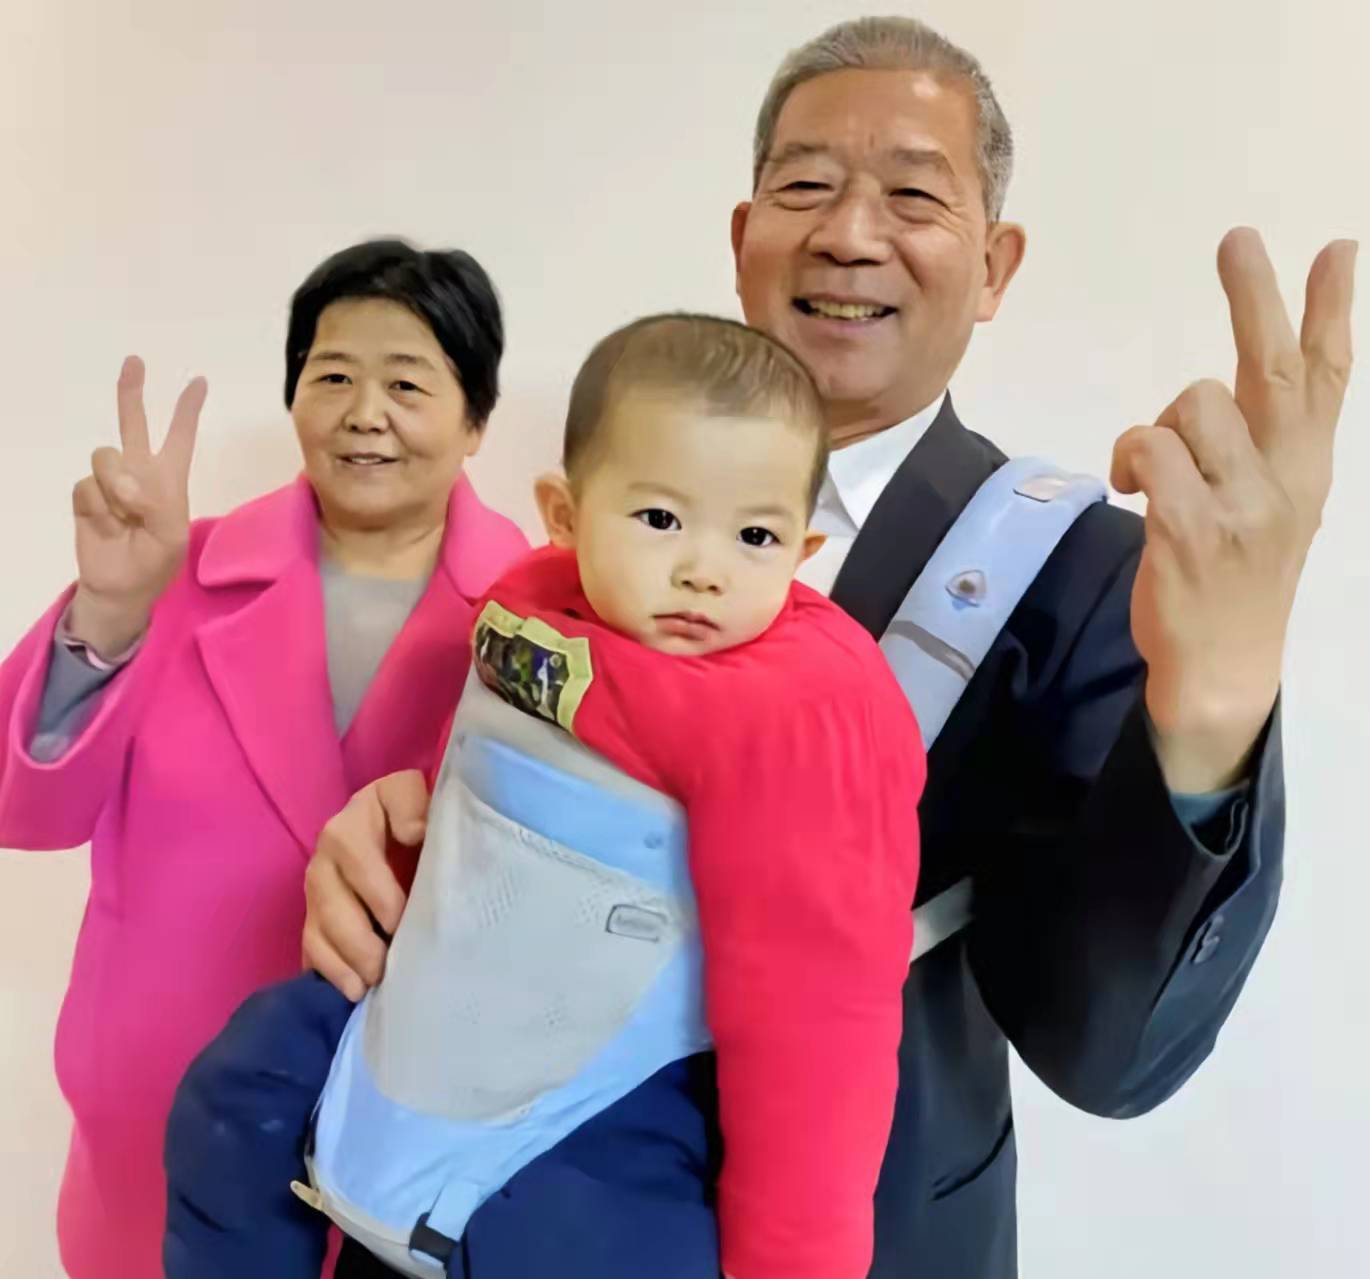 原创2019年山东枣庄67岁大妈生下女儿很多年轻人上门讨教生子经验